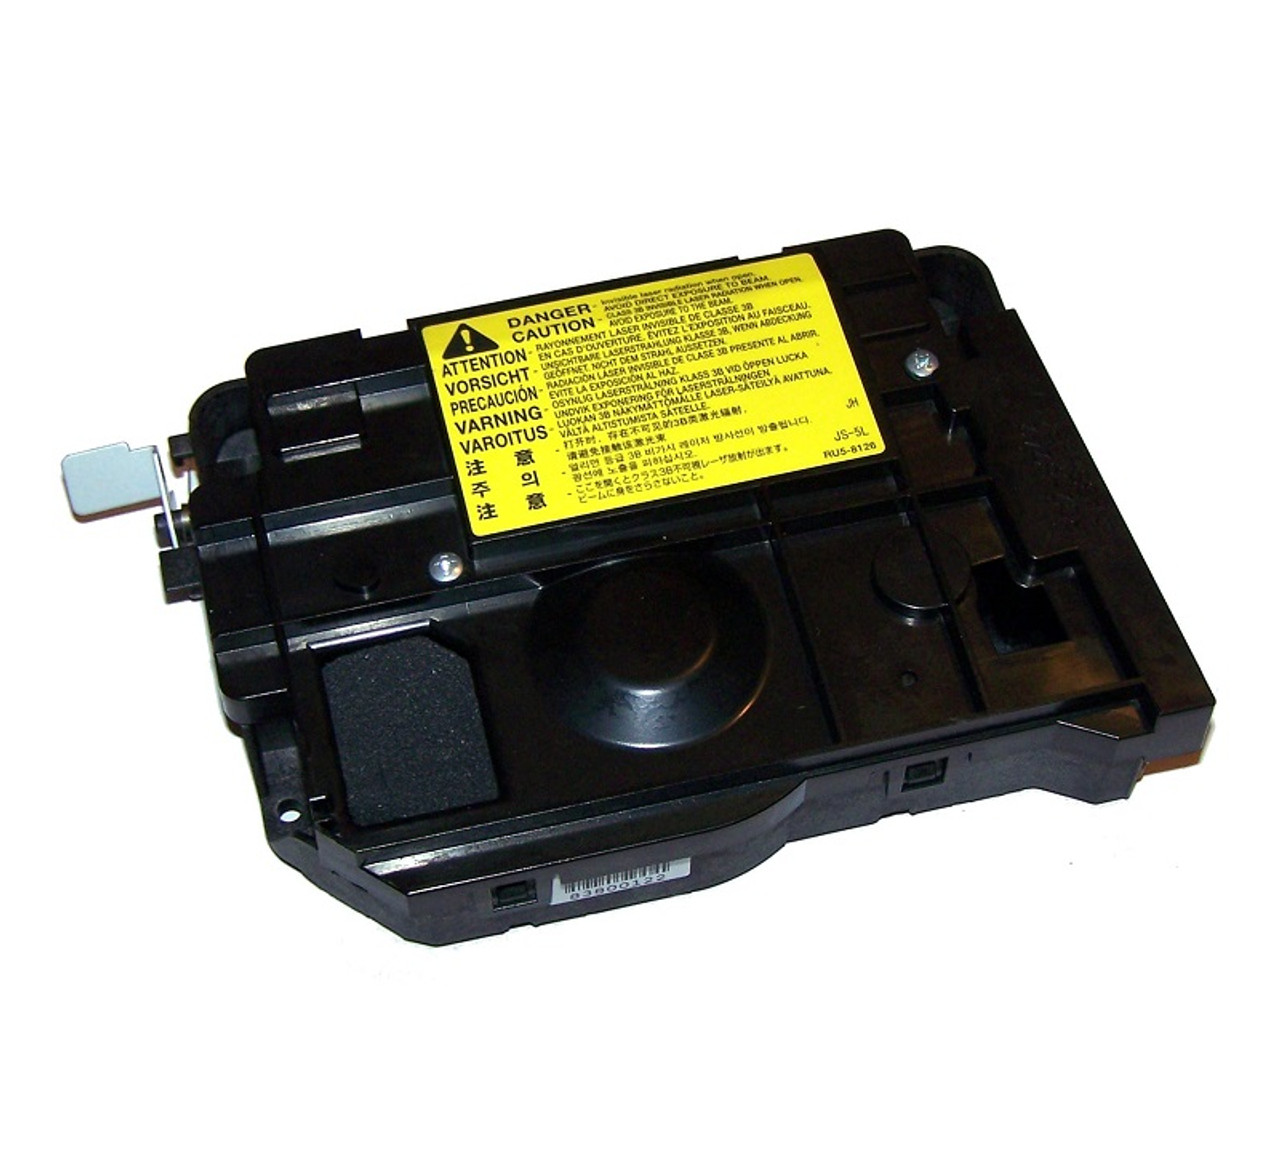 RG5-6380-000 - HP Laser Scanner for Color LaserJet 4600 / Canon C2500 Series